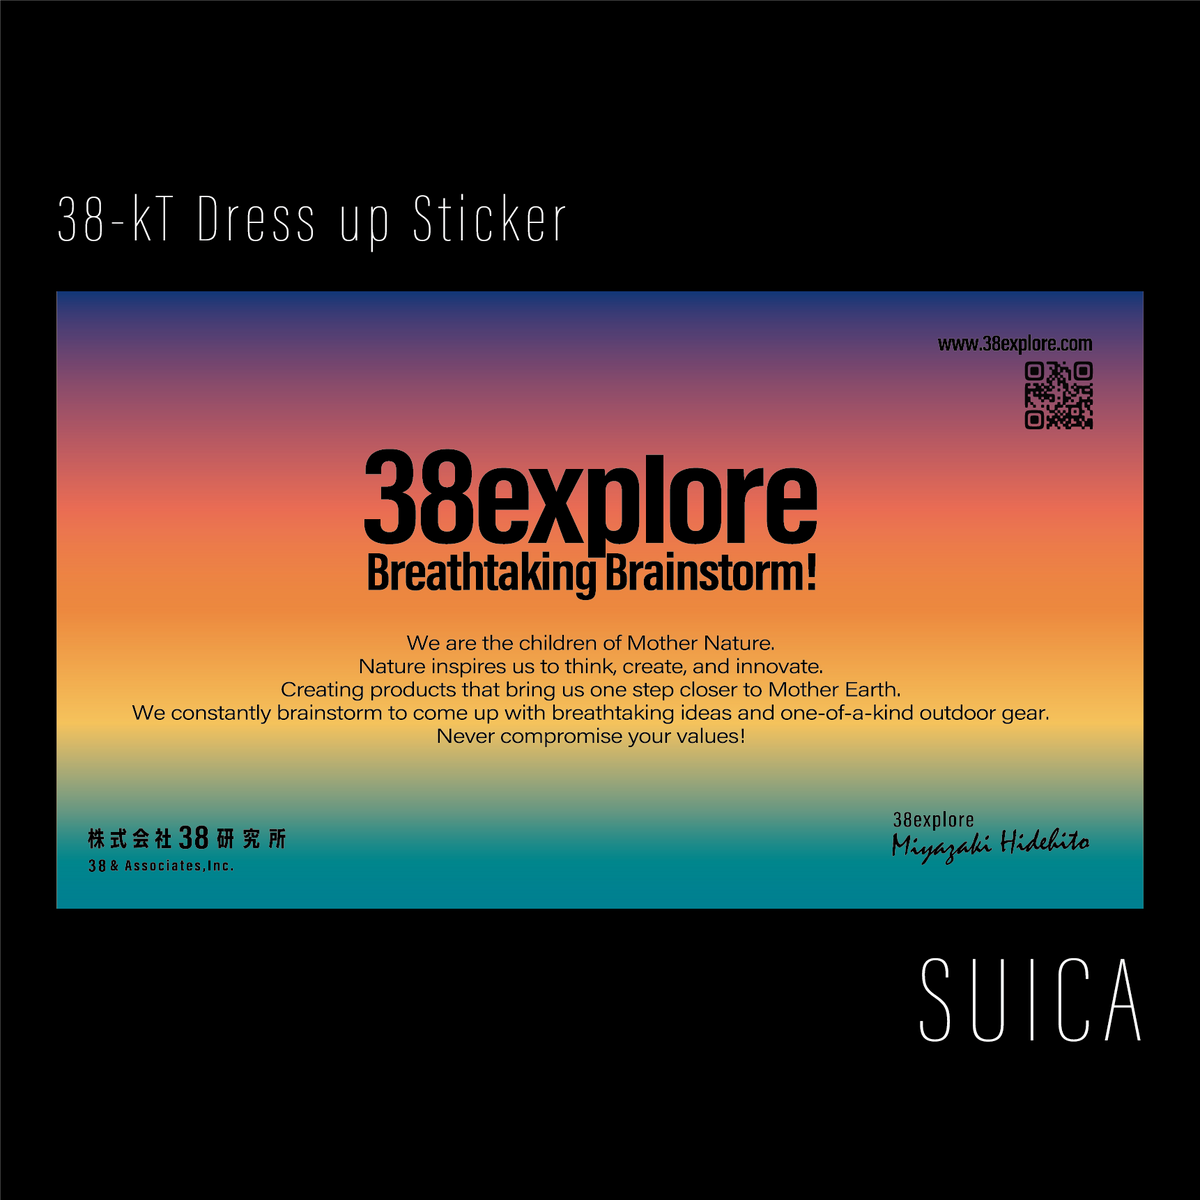 38-kT Dress up Sticker - SUICA